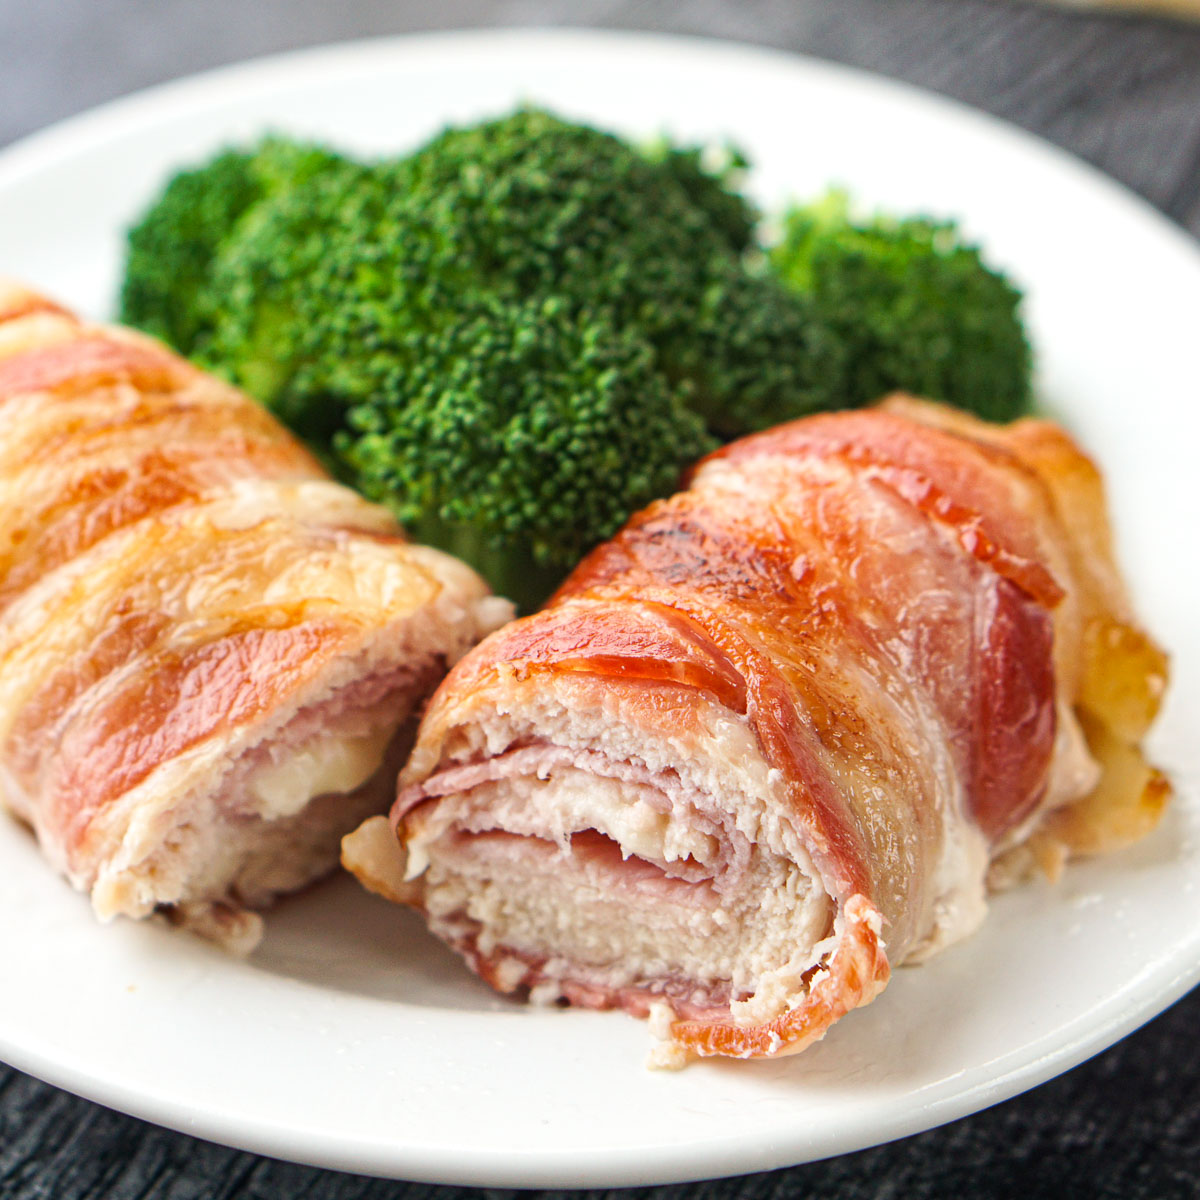 Bacon-Wrapped Chicken Cordon Bleu - Cook Eat Go